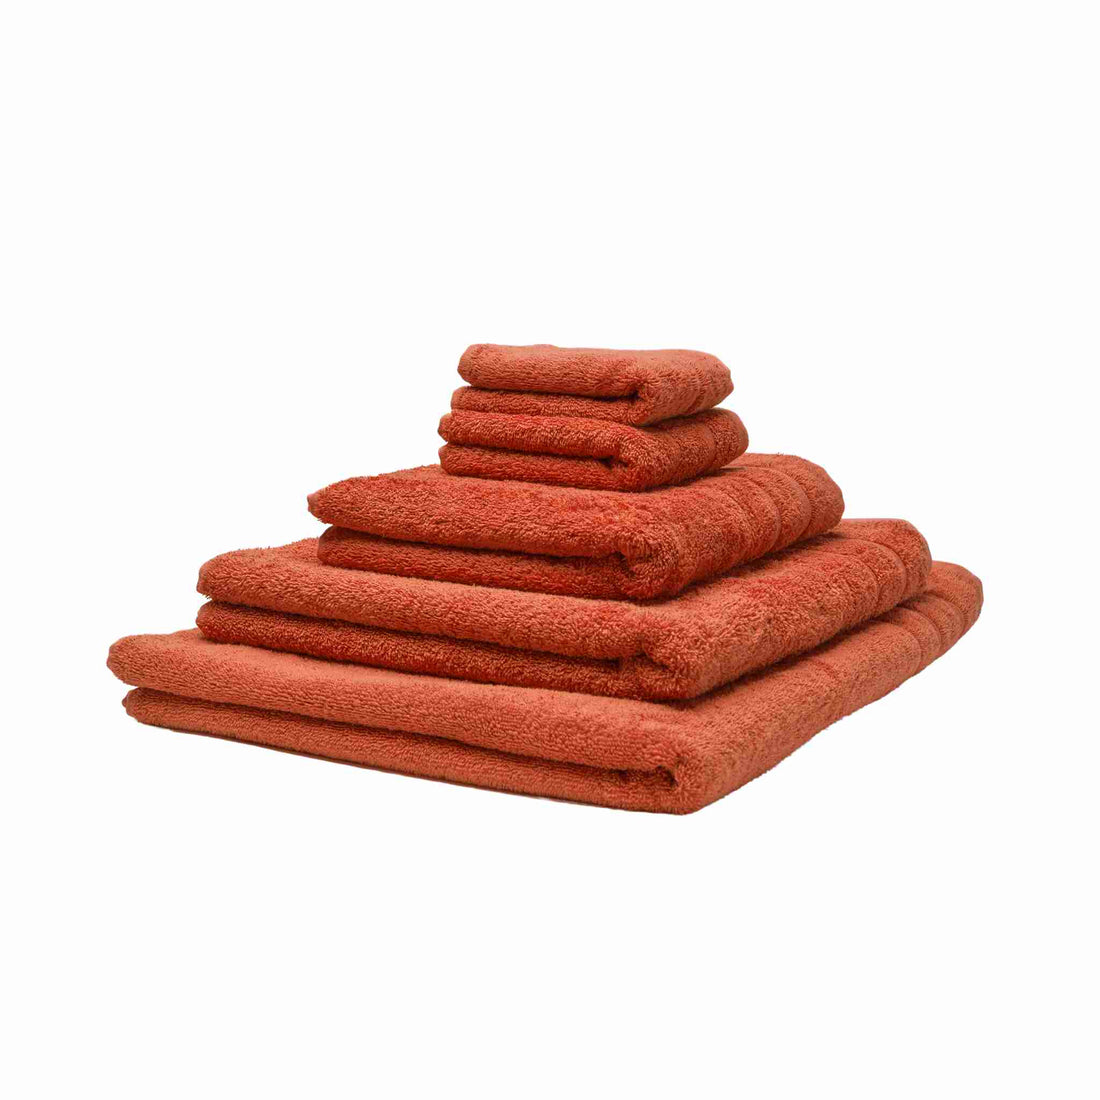 Fem økologiske håndklæder stablet oven på hinanden. Farven er rød eller rødokker. 